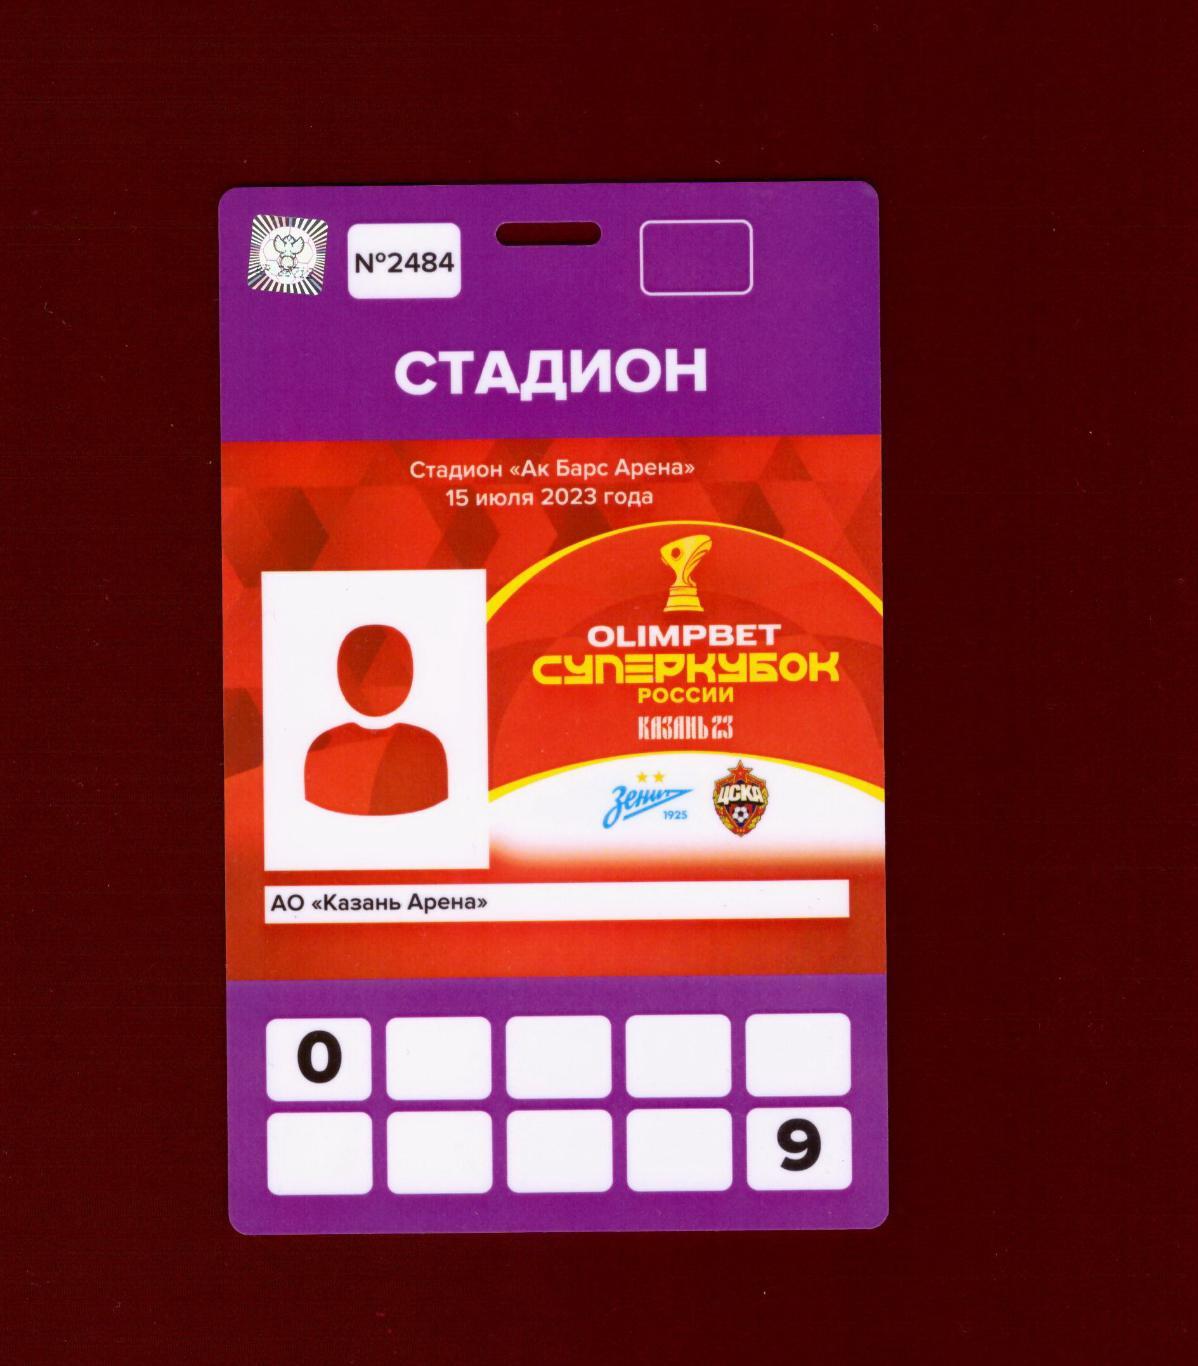 Зенит - ЦСКА Суперкубок России 2023 (Аккредитация)